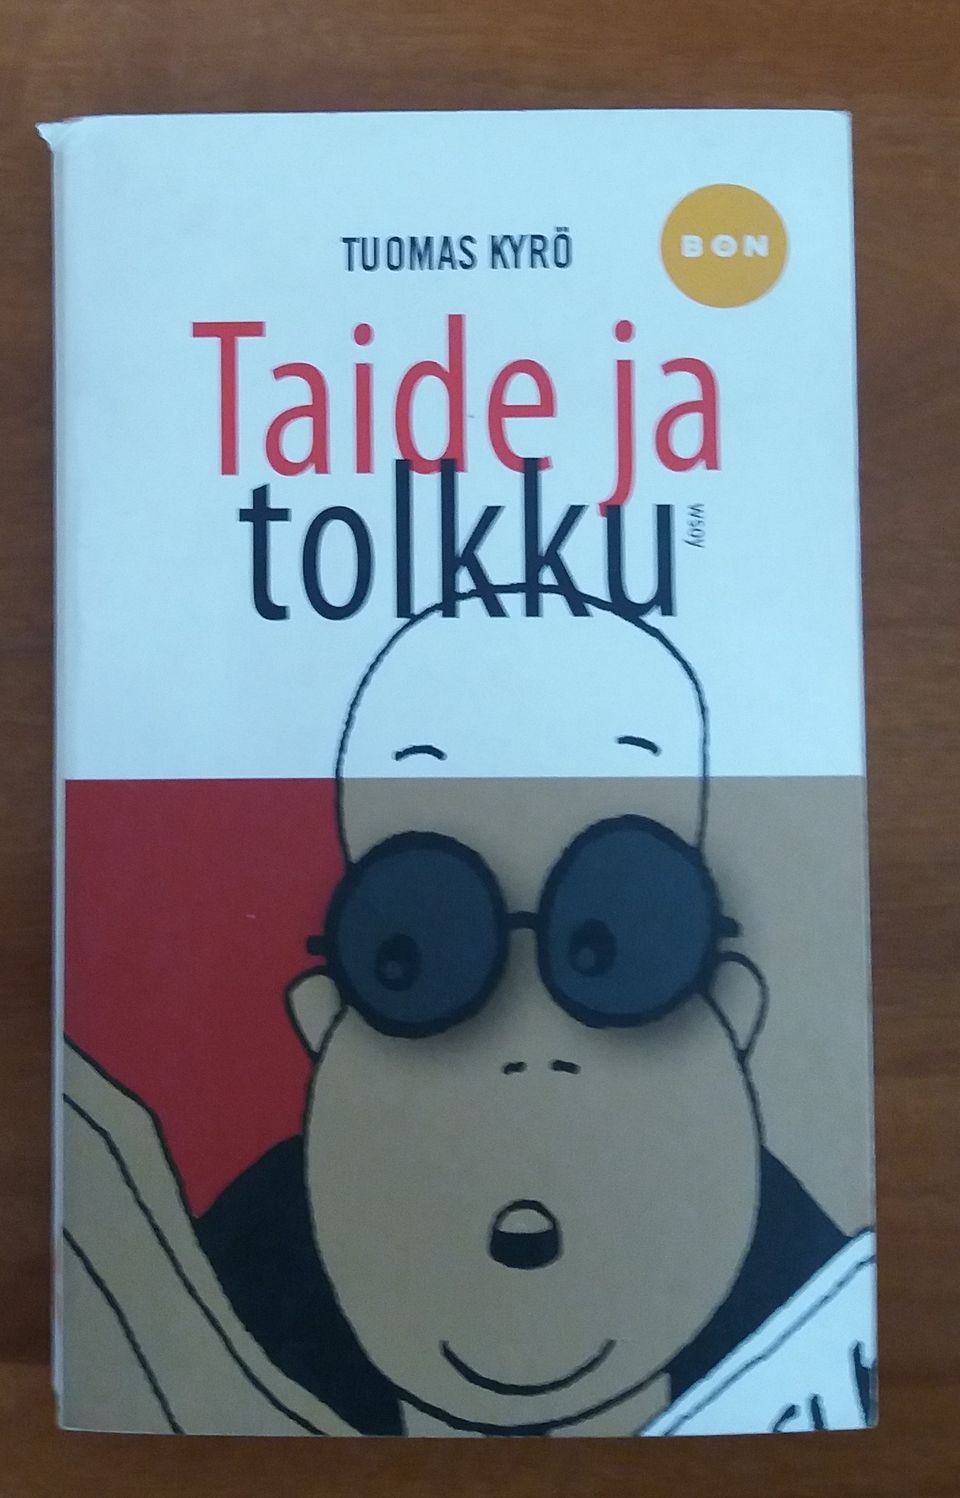 Tuomas Kyrö TAIDE JA TOLKKU Wsoy BON 2008